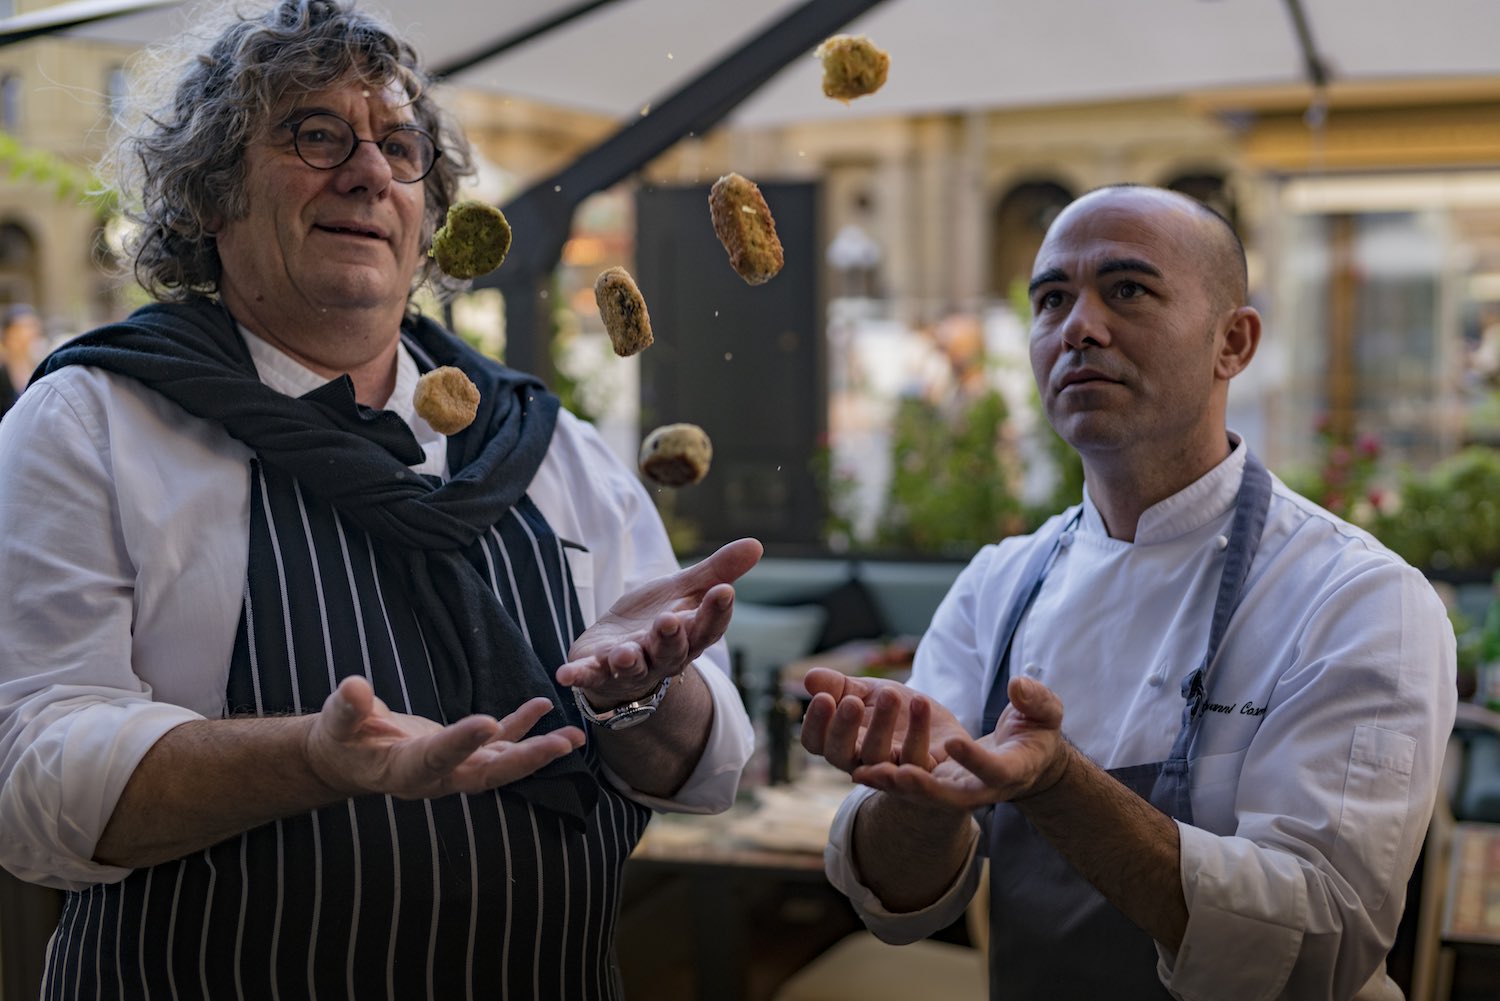 La domenica lo chef Fulvio Pierangelini controlla il meteo toscano dalla cucina del ristorante Irene dell'Hotel Savoy: Piovono Polpette